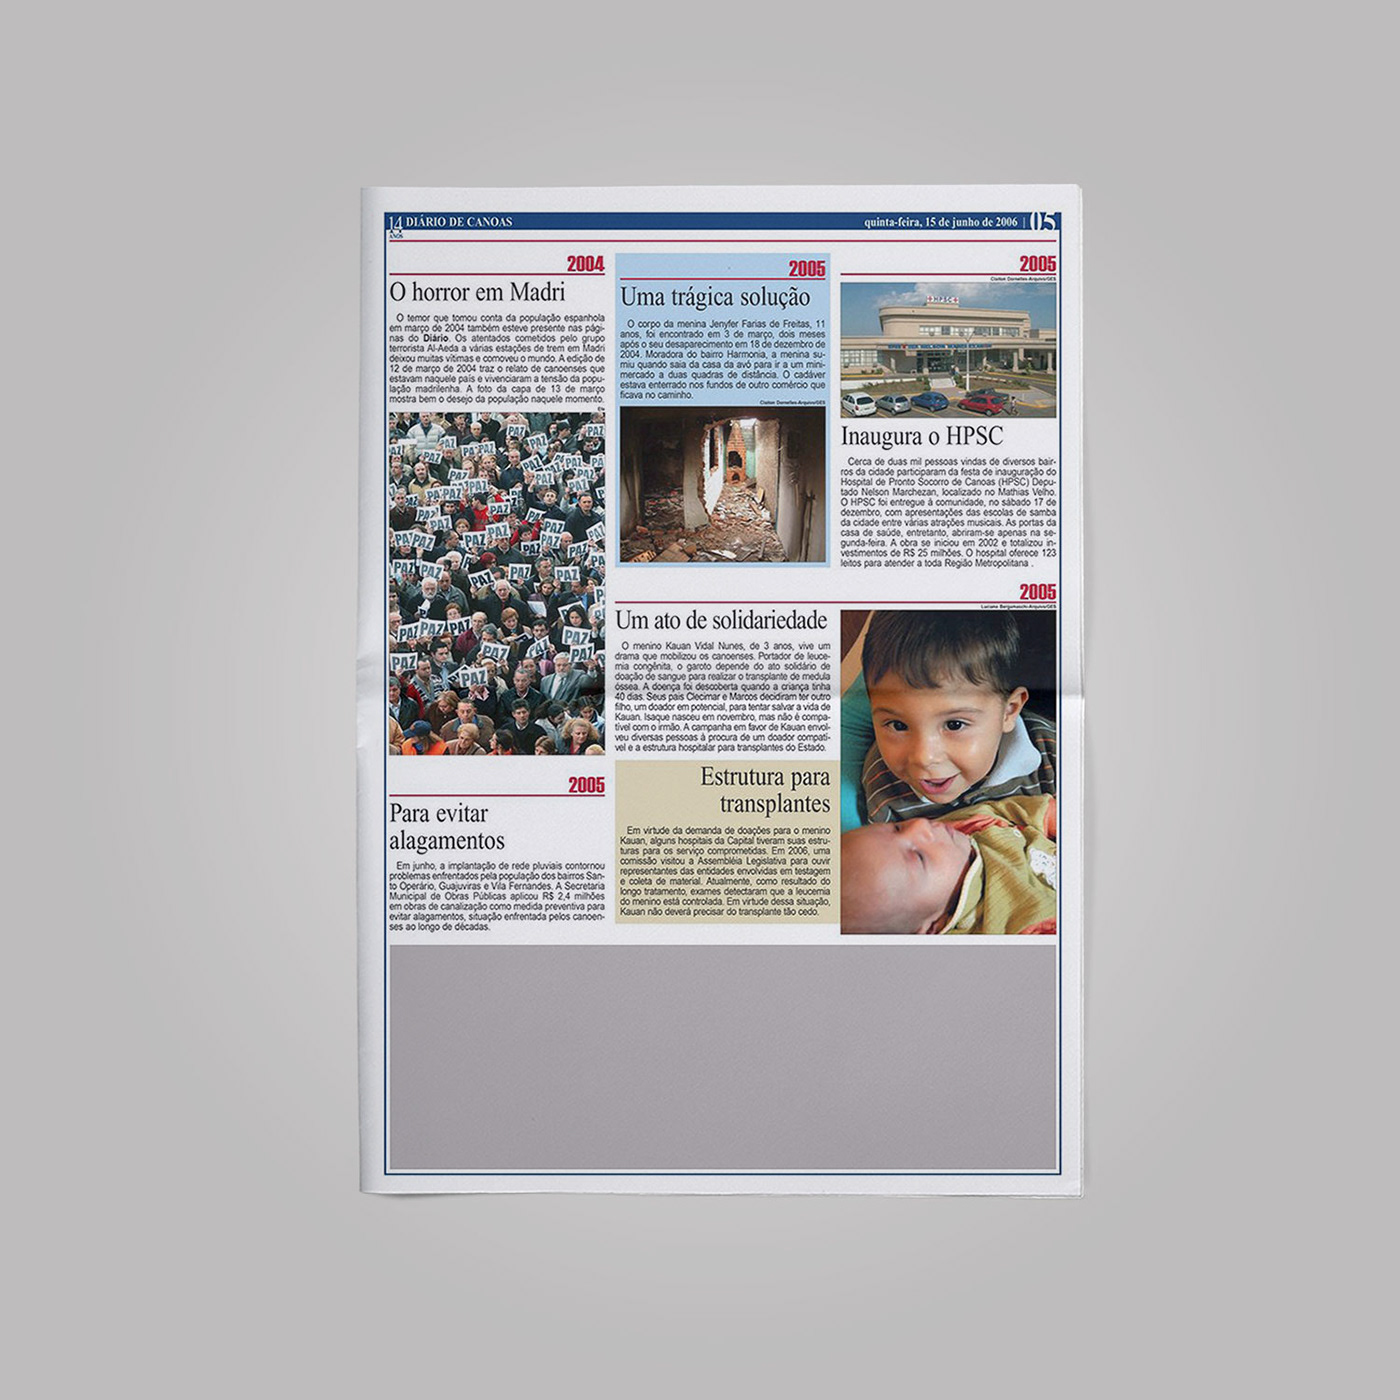 newspaper InDesign News Design page design